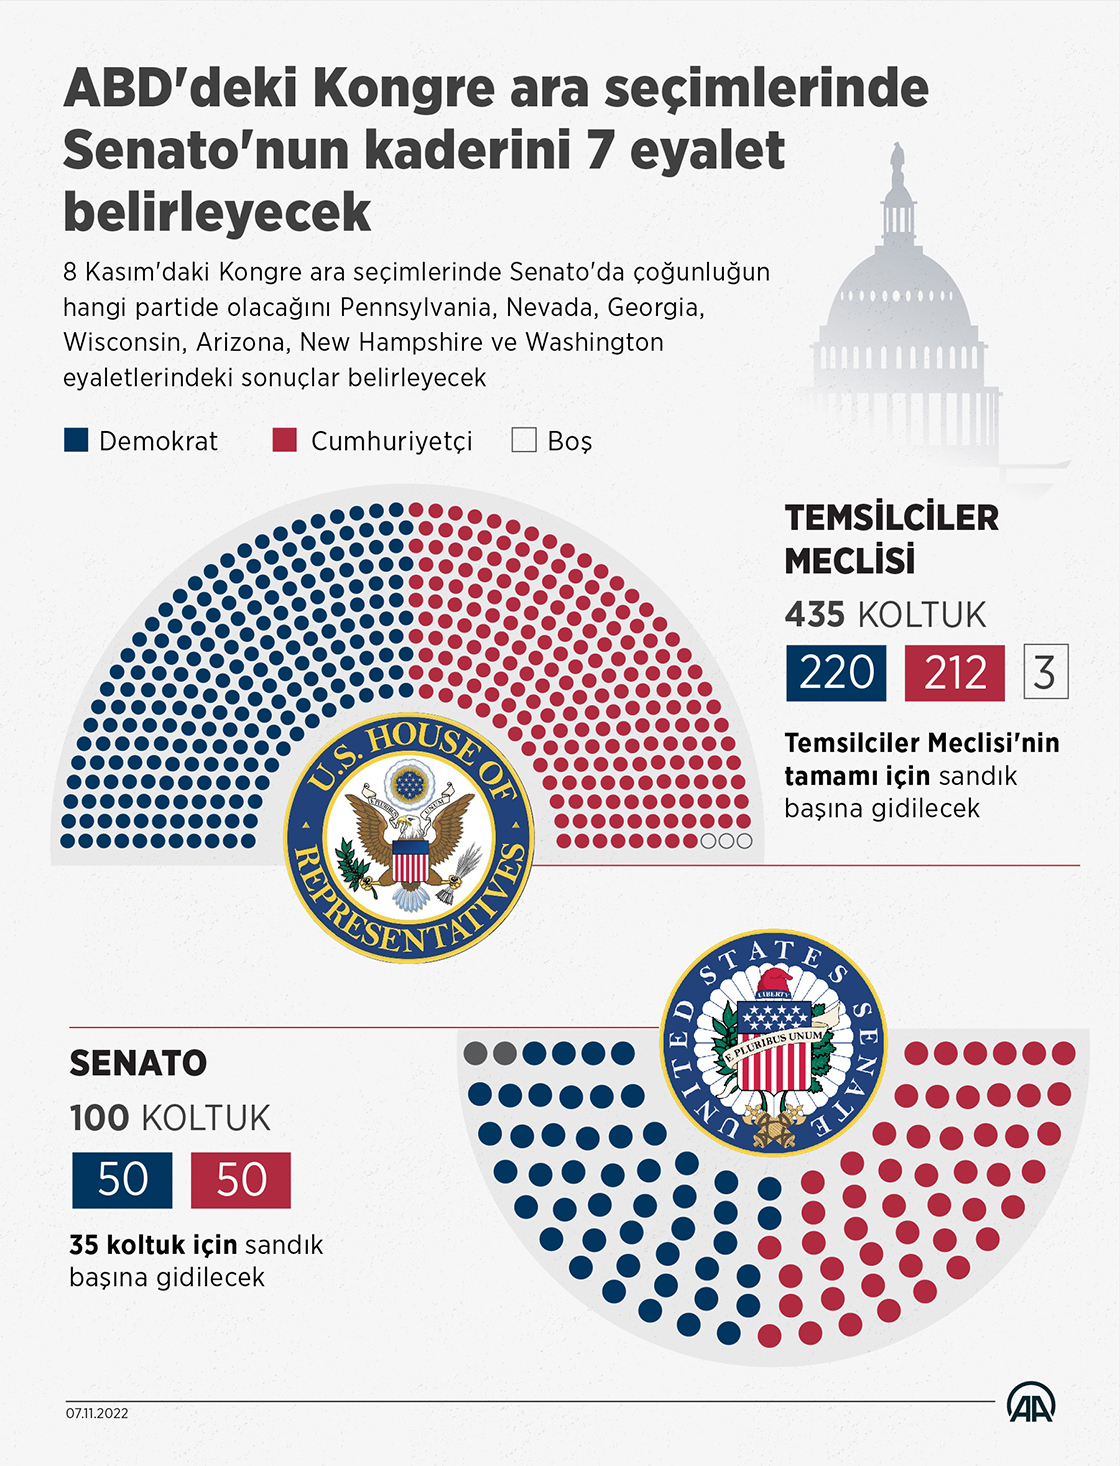 ABD'deki Kongre ara seçimlerinde Senato'nun kaderini 7 eyalet belirleyecek